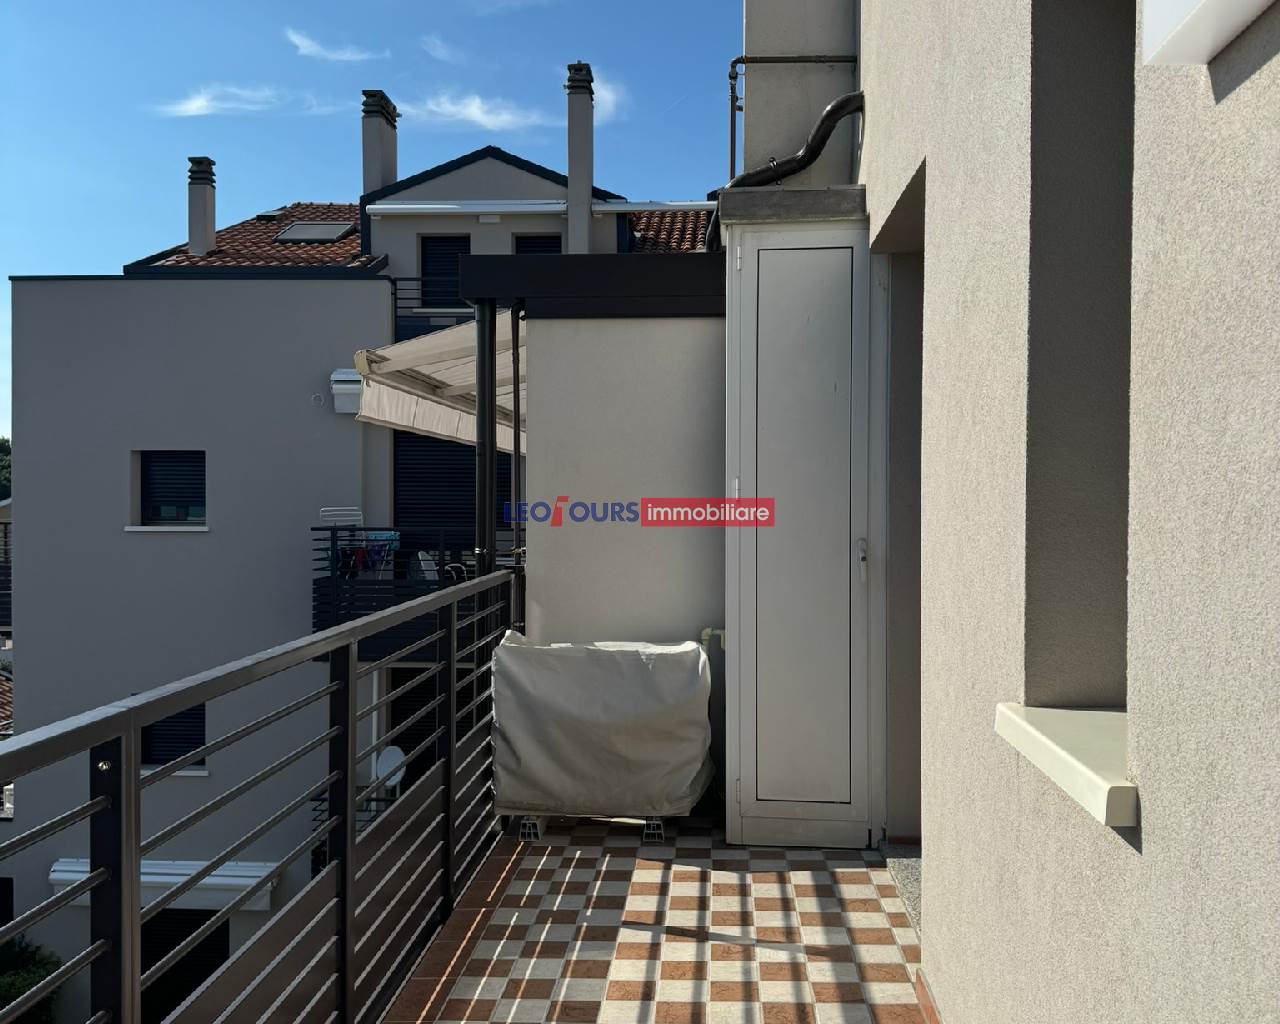 Zwei-Zimmer-Wohnung in Residenz am Meer, Cavallino